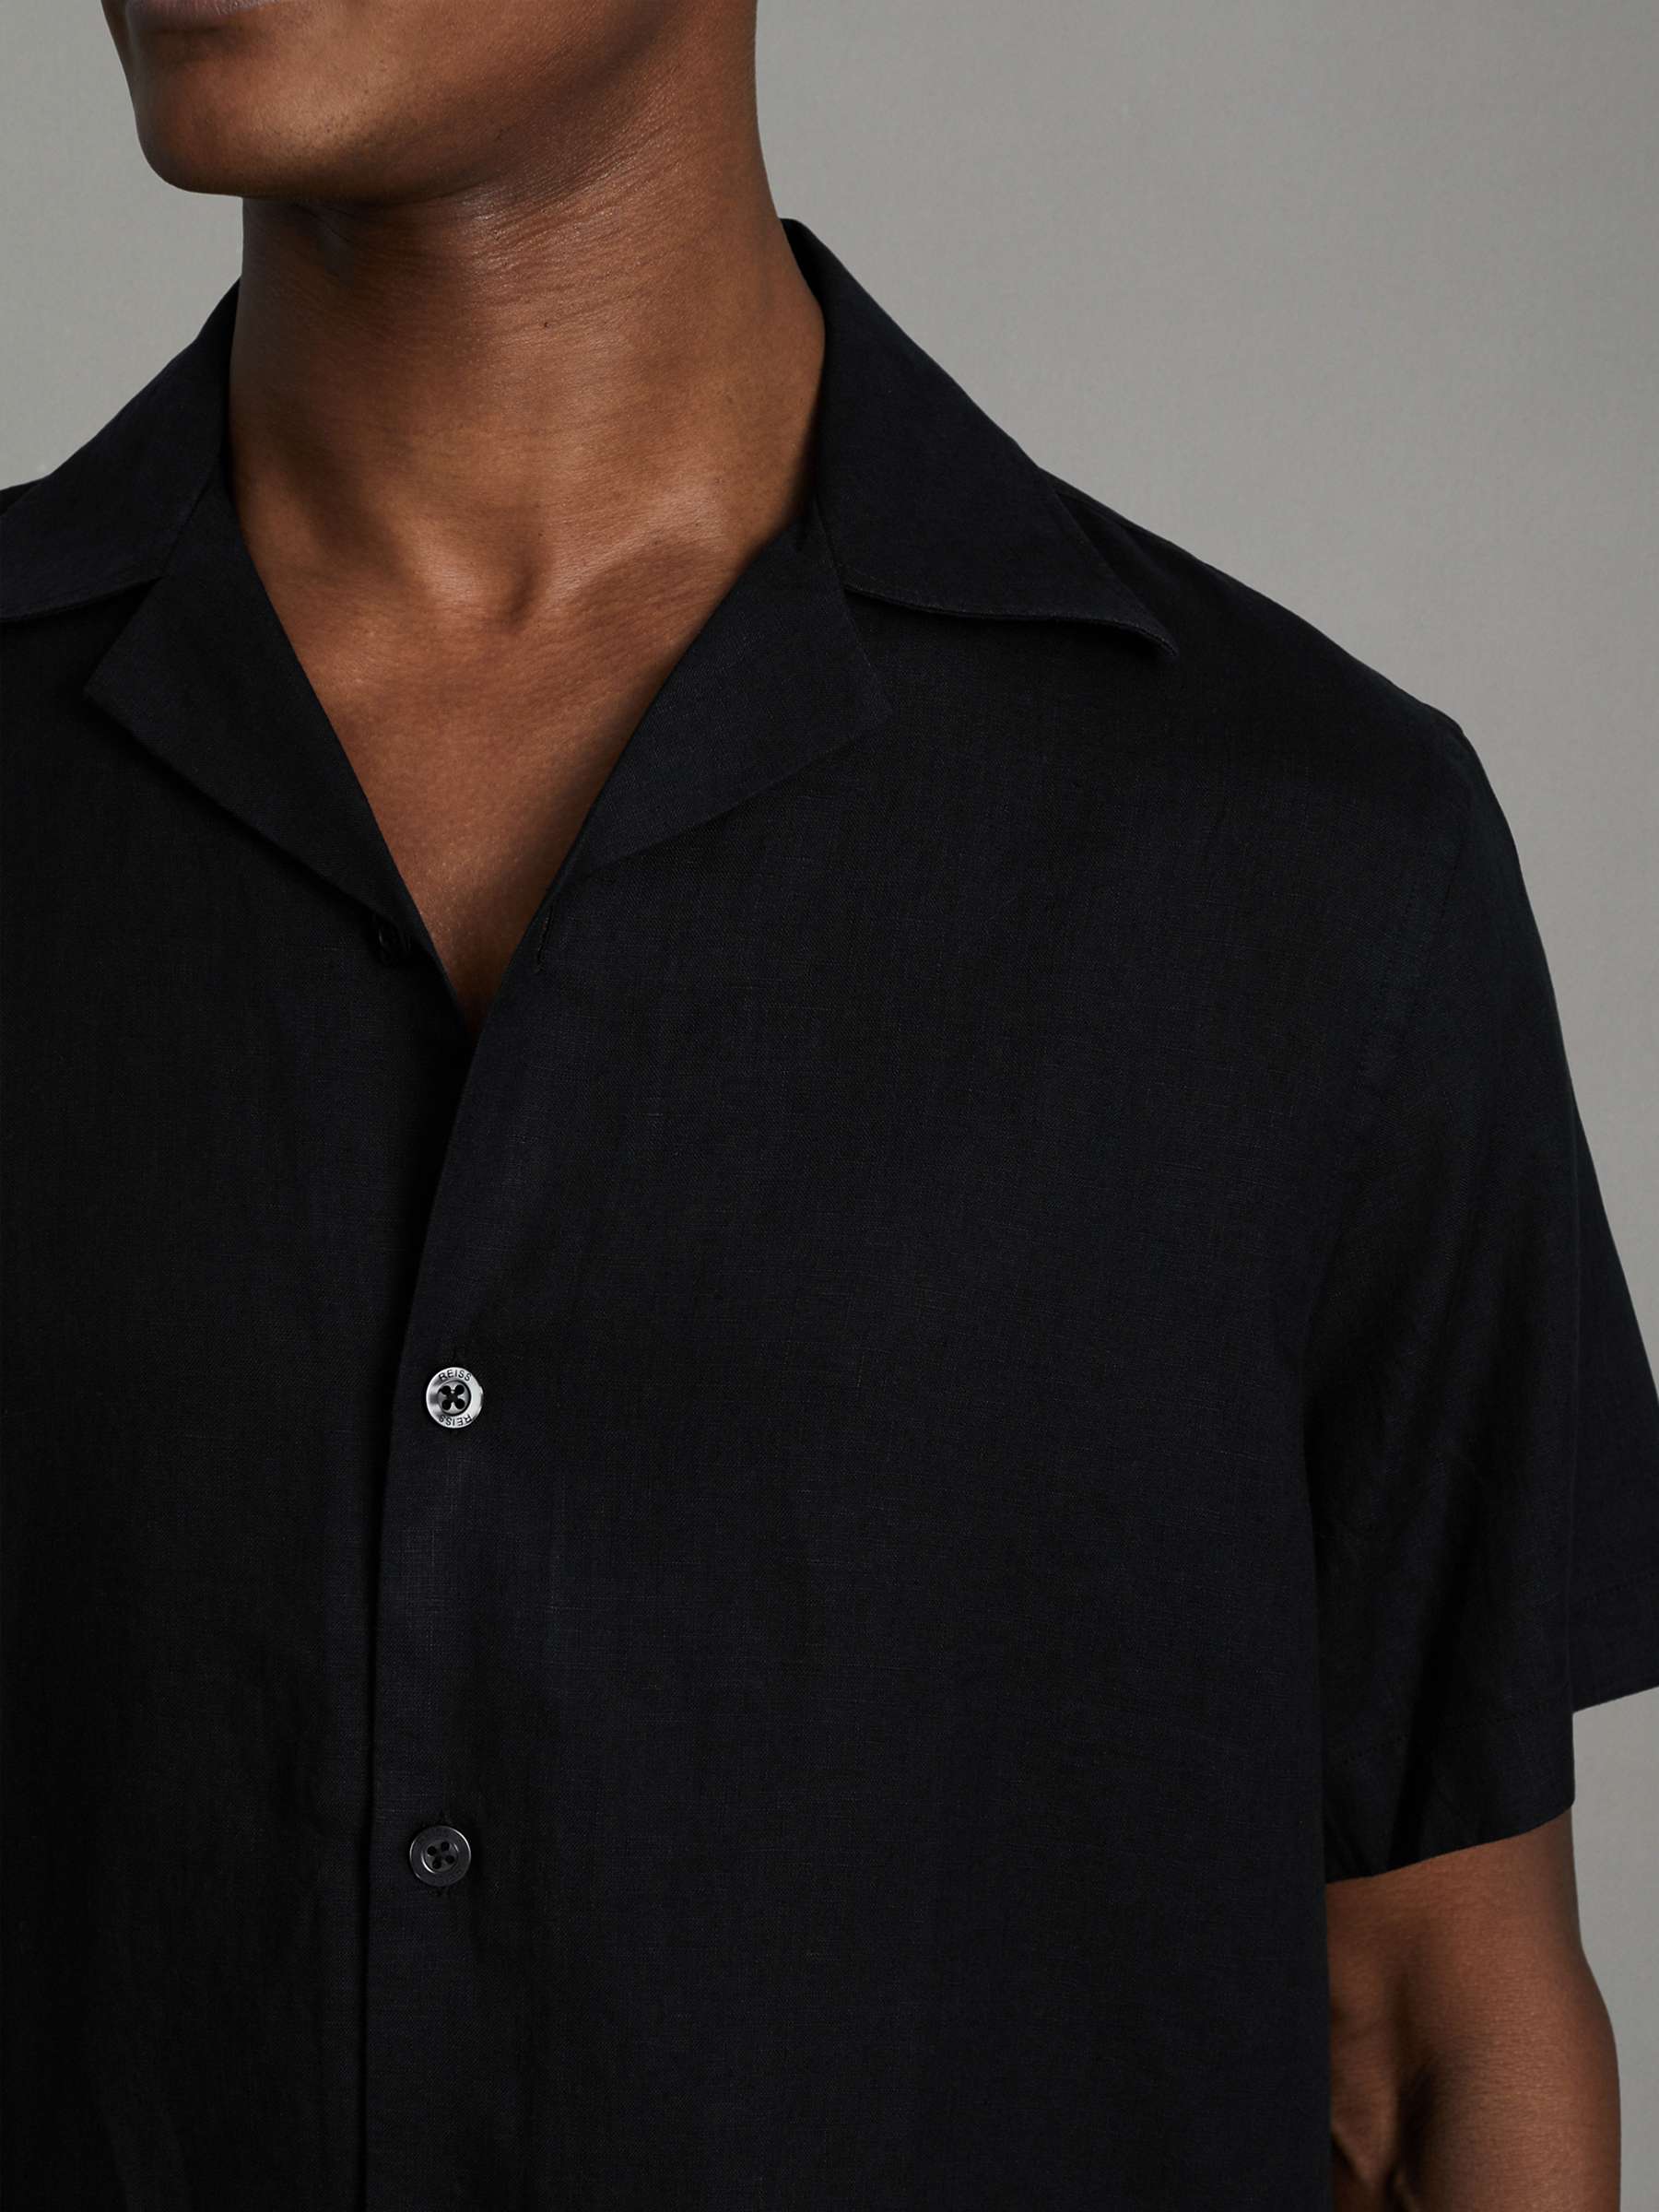 Buy Reiss Beldi Linen Short Sleeve Cuban Shirt Online at johnlewis.com